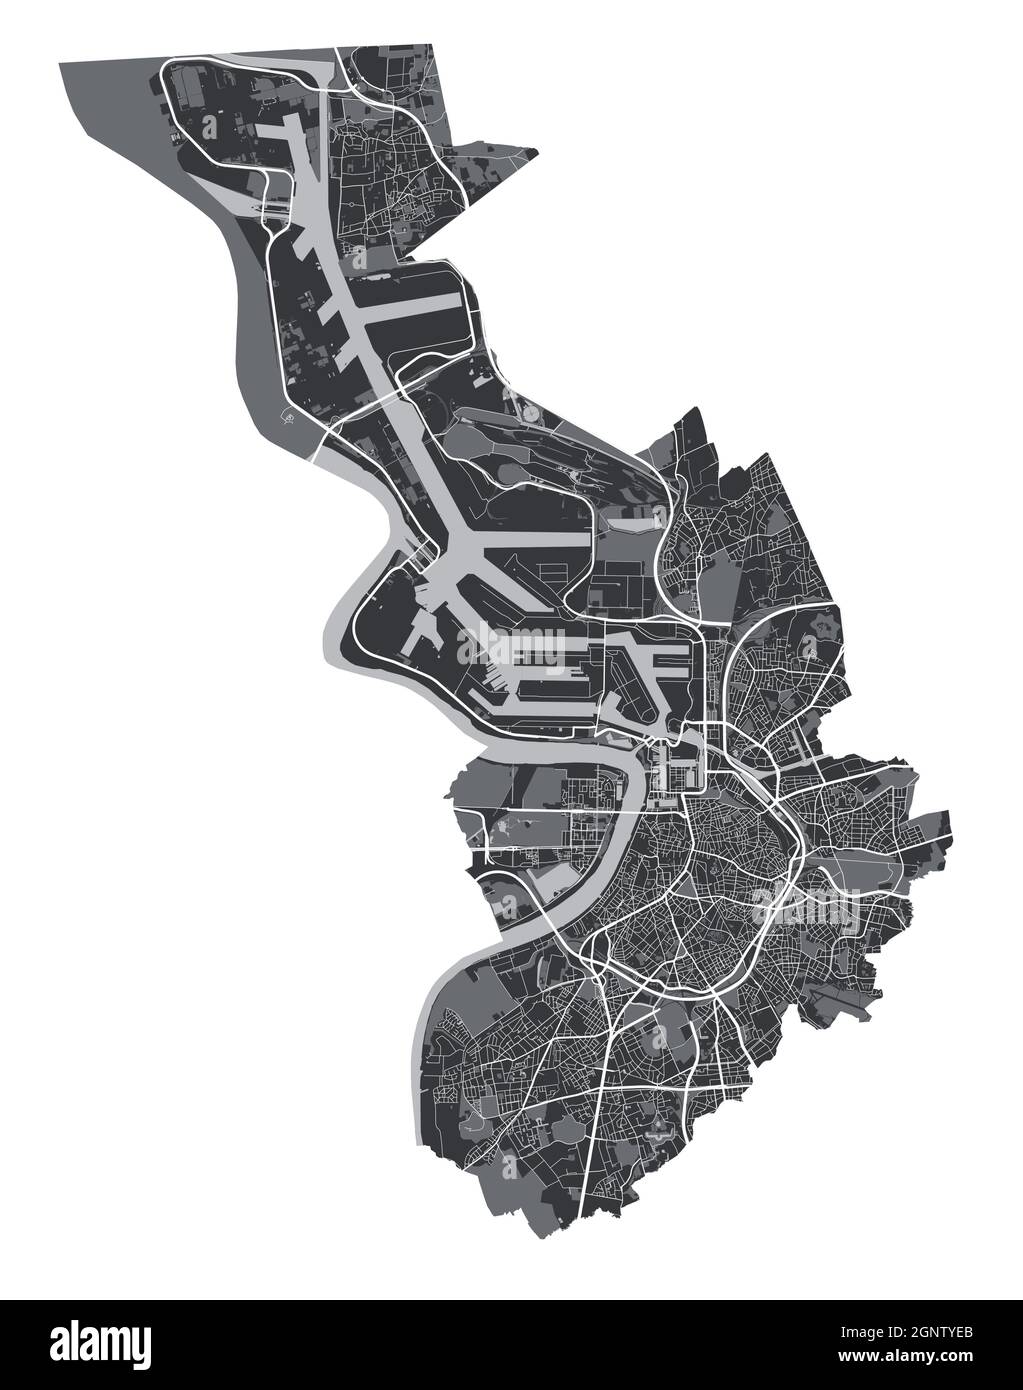 Karte von Antwerpen. Detaillierte Vektorkarte des Verwaltungsgebiets der Stadt Antwerpen. Blick auf das Stadtbild mit Postern und die Arie der Metropole. Schwarzes Land mit weißen Straßen, Straßen und Stock Vektor